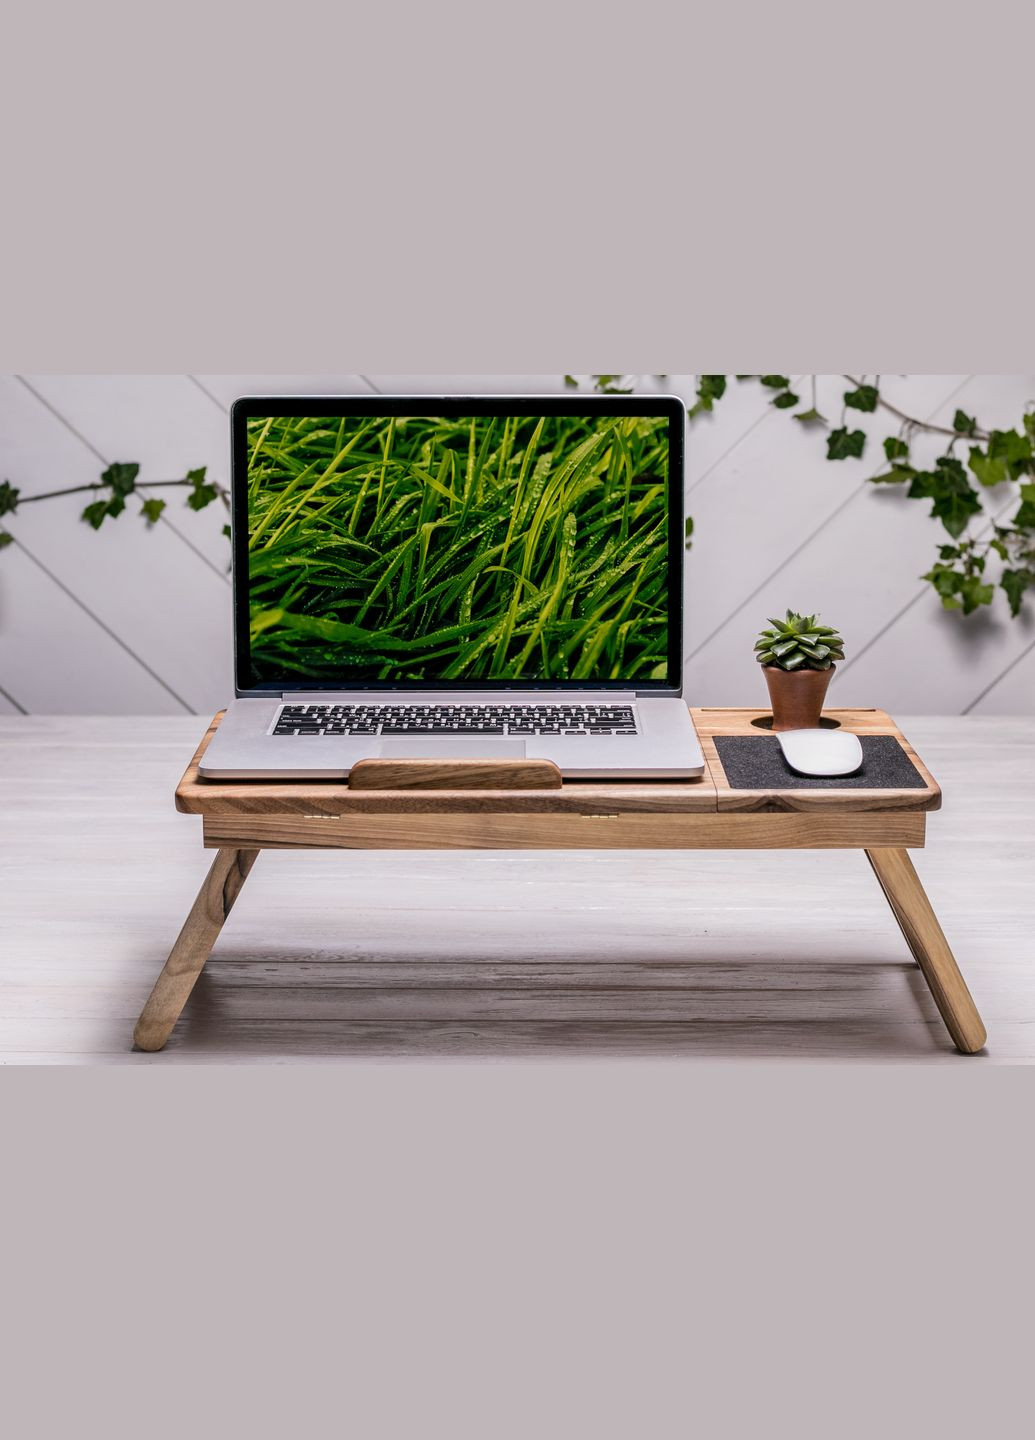 Аксесуар «Laptop iDesk» Зручна підставка під ноутбук чи планшет EcoWalnut (293083545)